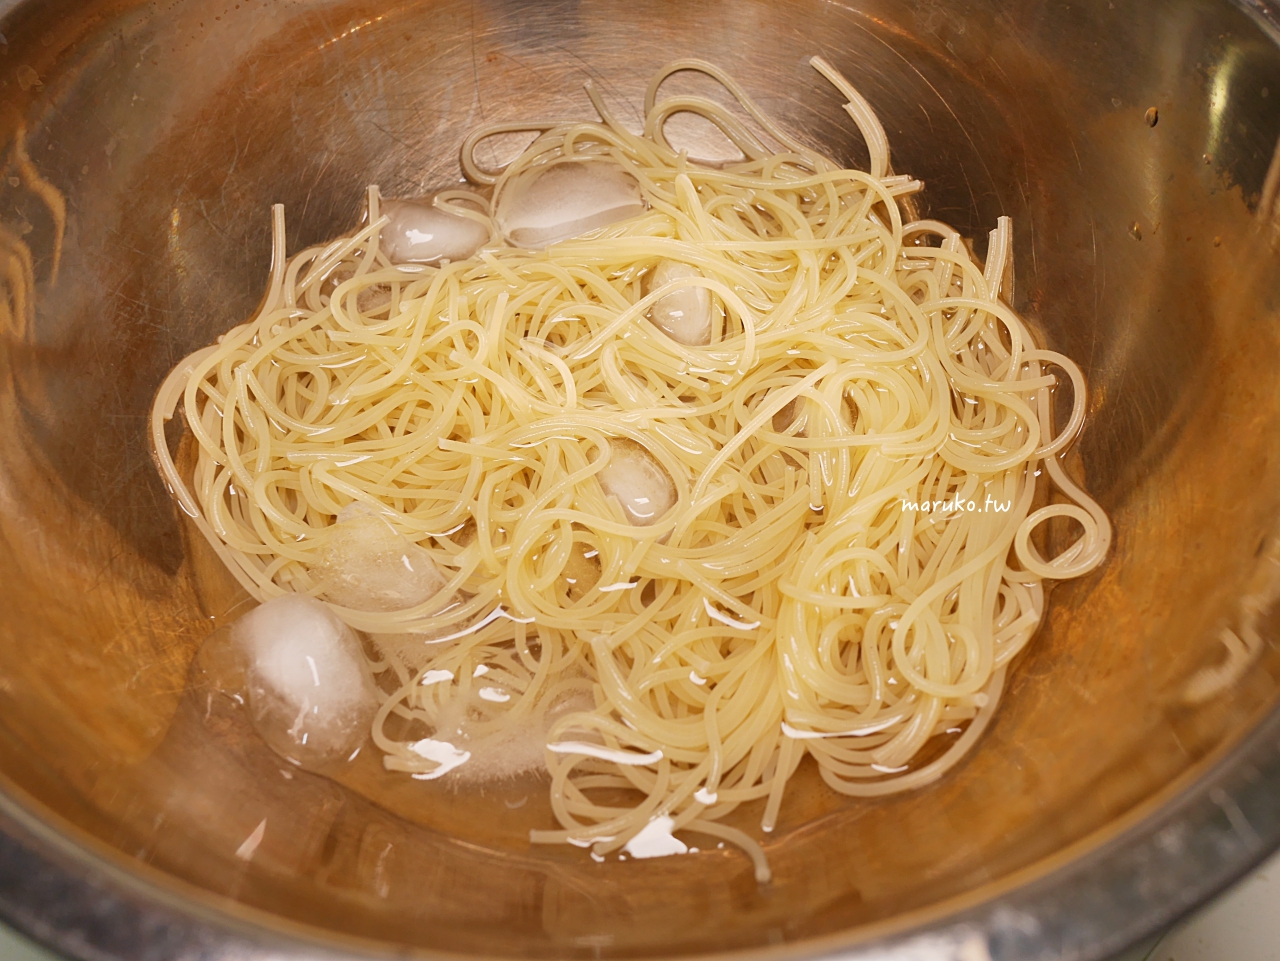 【食譜】韓式泡菜冷麵 10分鐘上菜，用義大利天使麵做清爽無負擔的創意料理！ @Maruko與美食有個約會